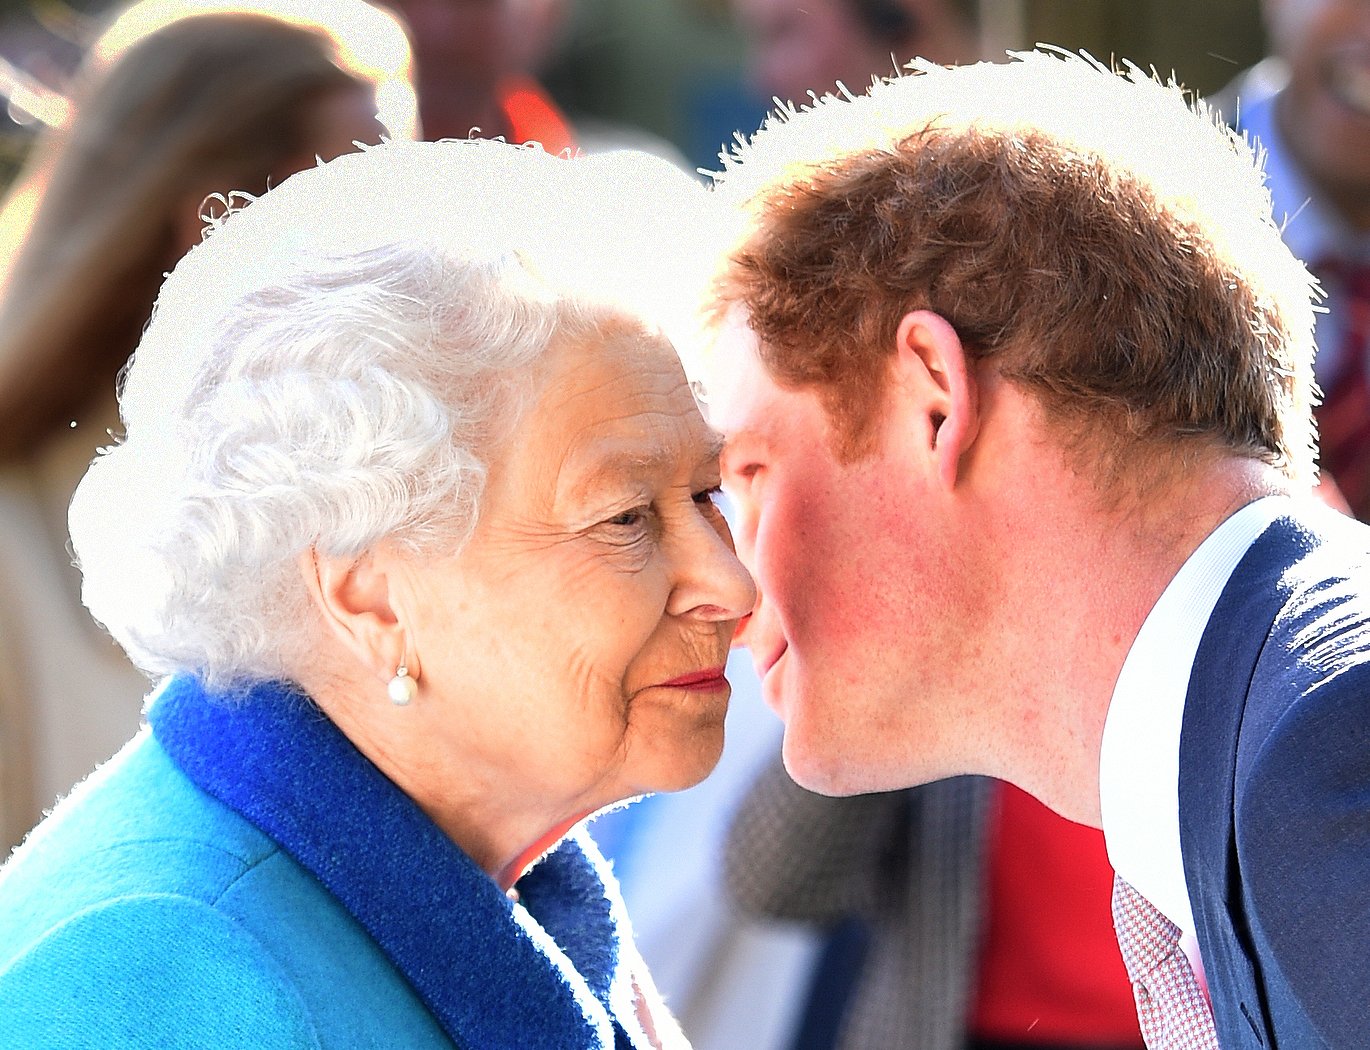 La reine Elizabeth II et le prince Harry assistant à l'exposition annuelle de fleurs de Chelsea à l'hôpital royal de Chelsea, le 18 mai 2015 à Londres, en Angleterre.│Source : Getty Images